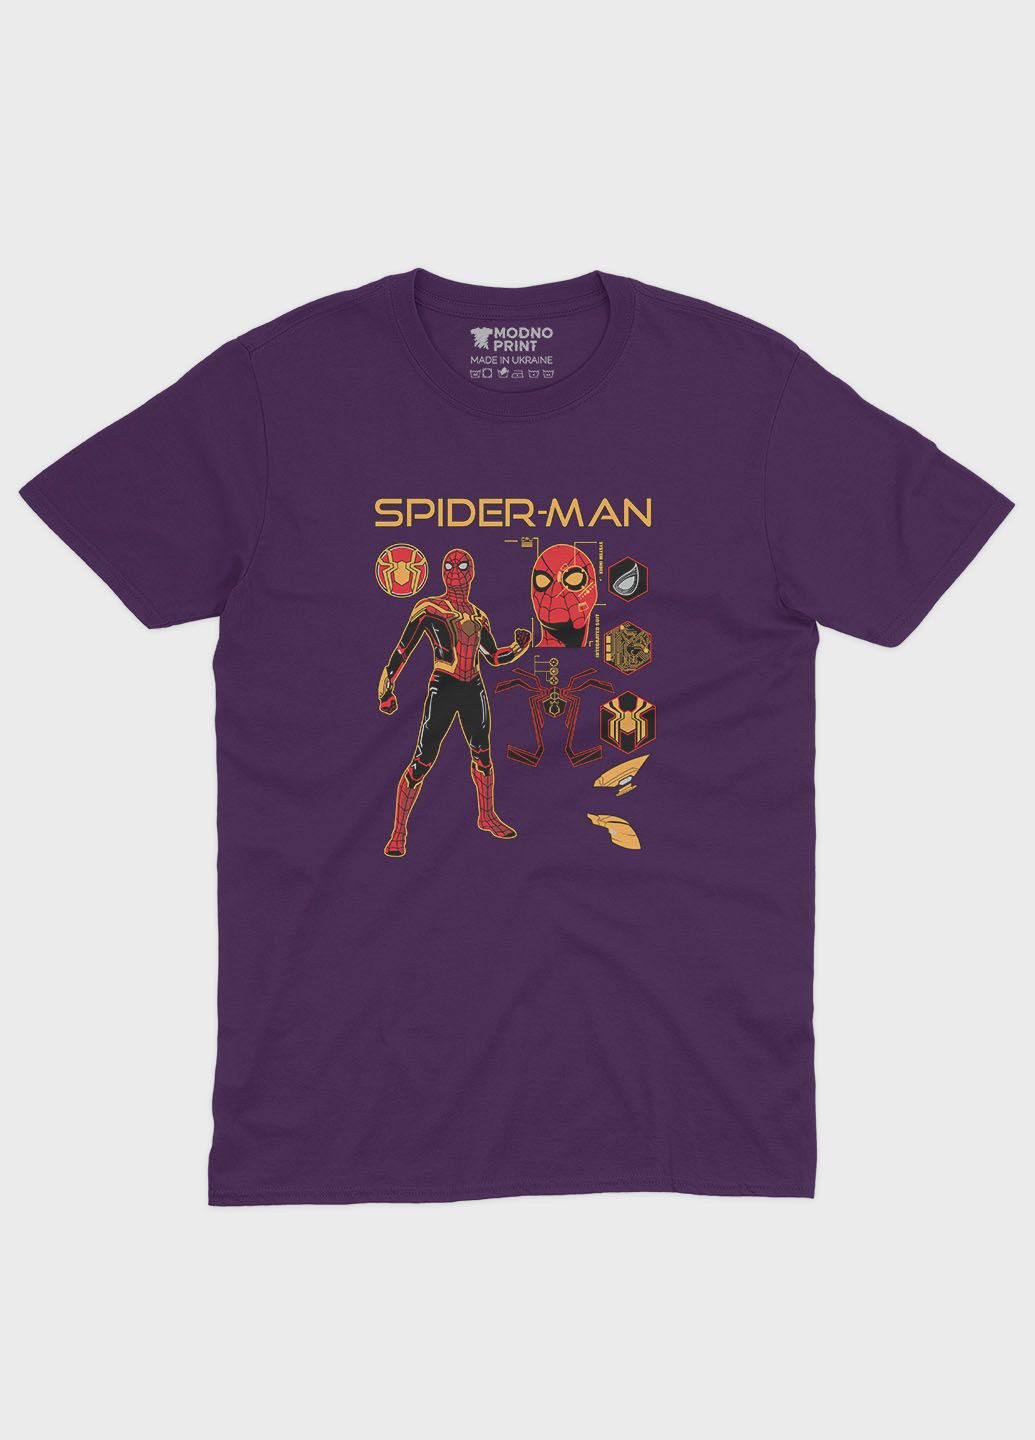 Фиолетовая демисезонная футболка для мальчика с принтом супергероя - человек-паук (ts001-1-dby-006-014-095-b) Modno